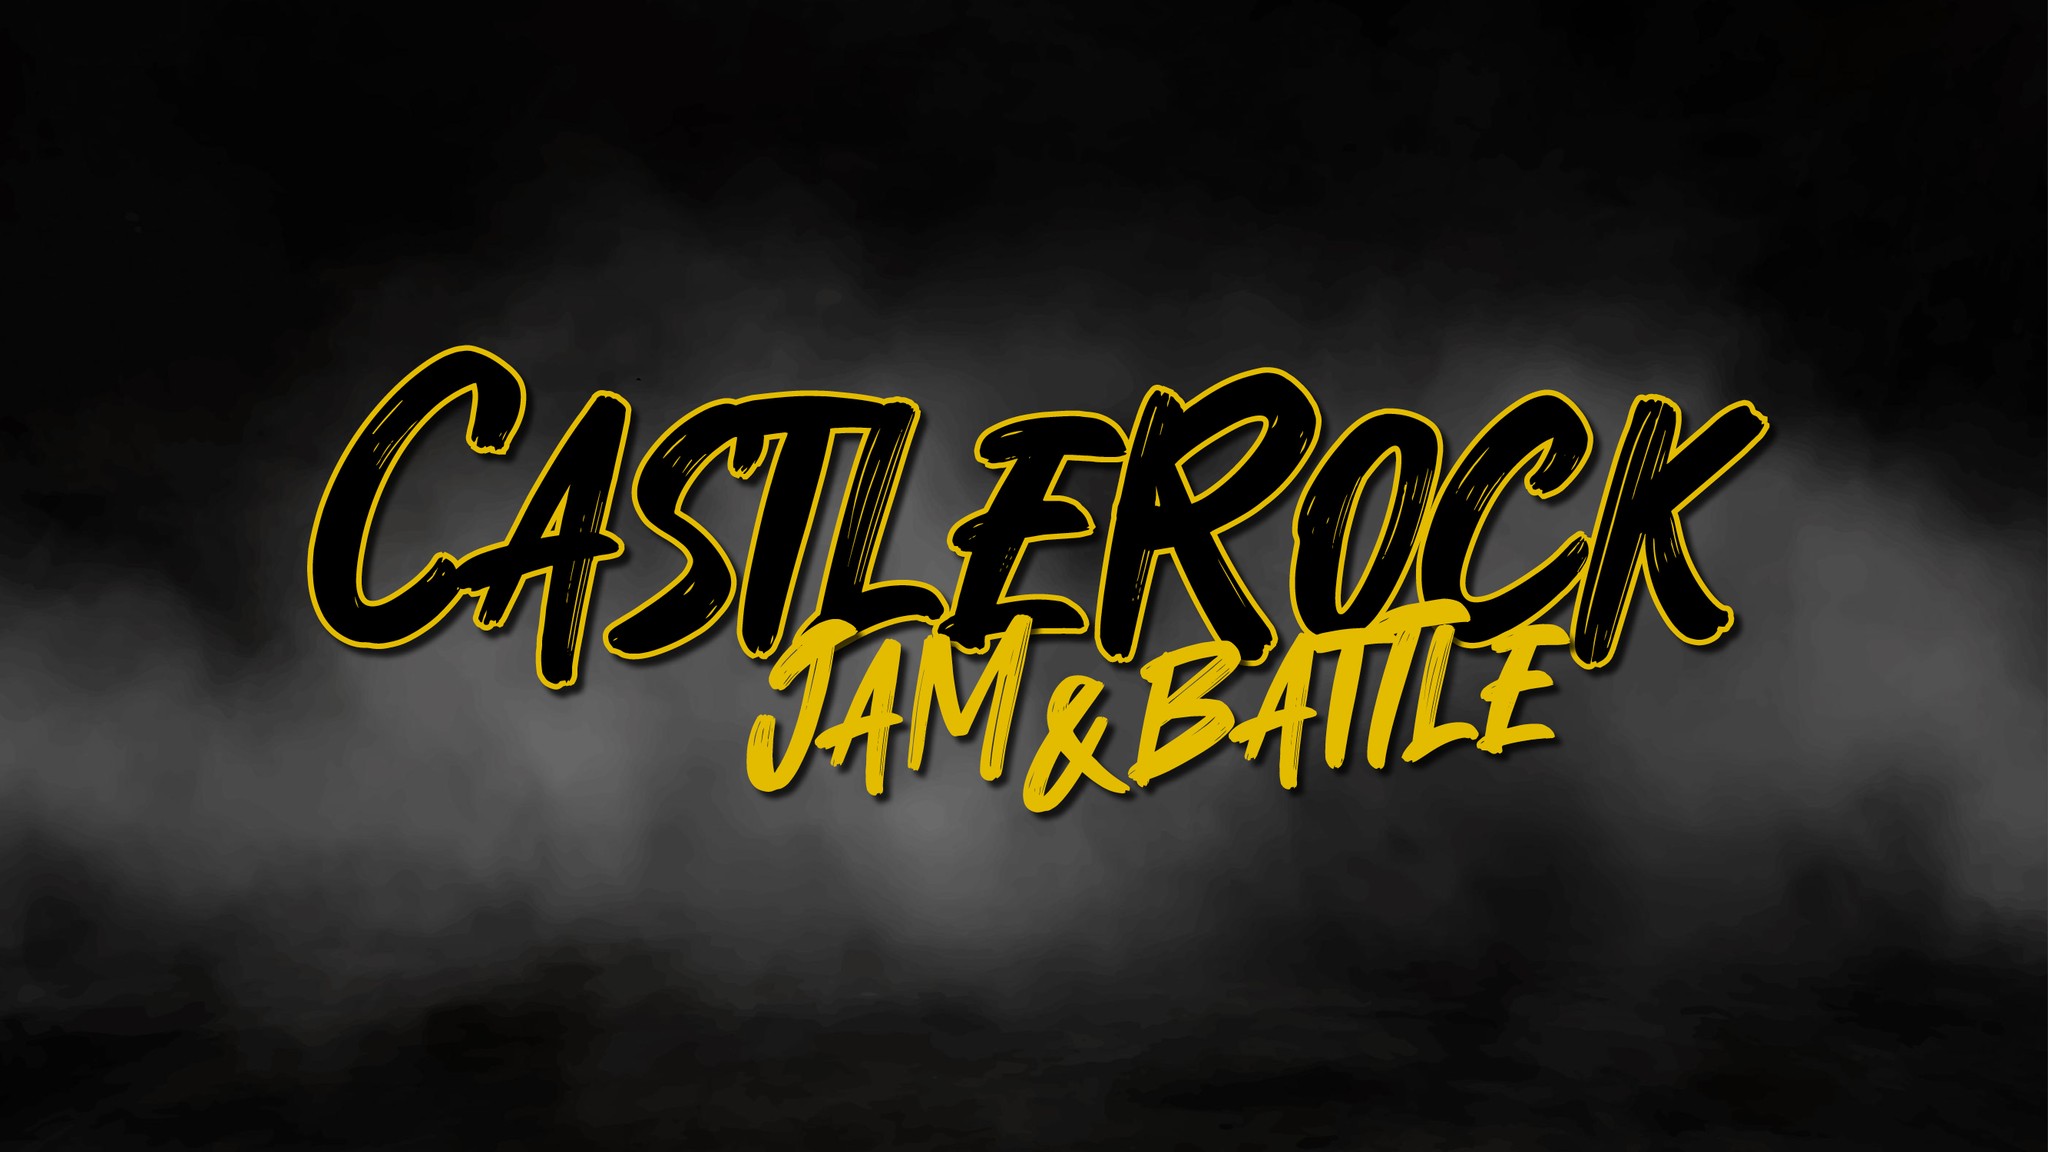 Castle Rock Jam’ und ‘DTV Ranking Battle